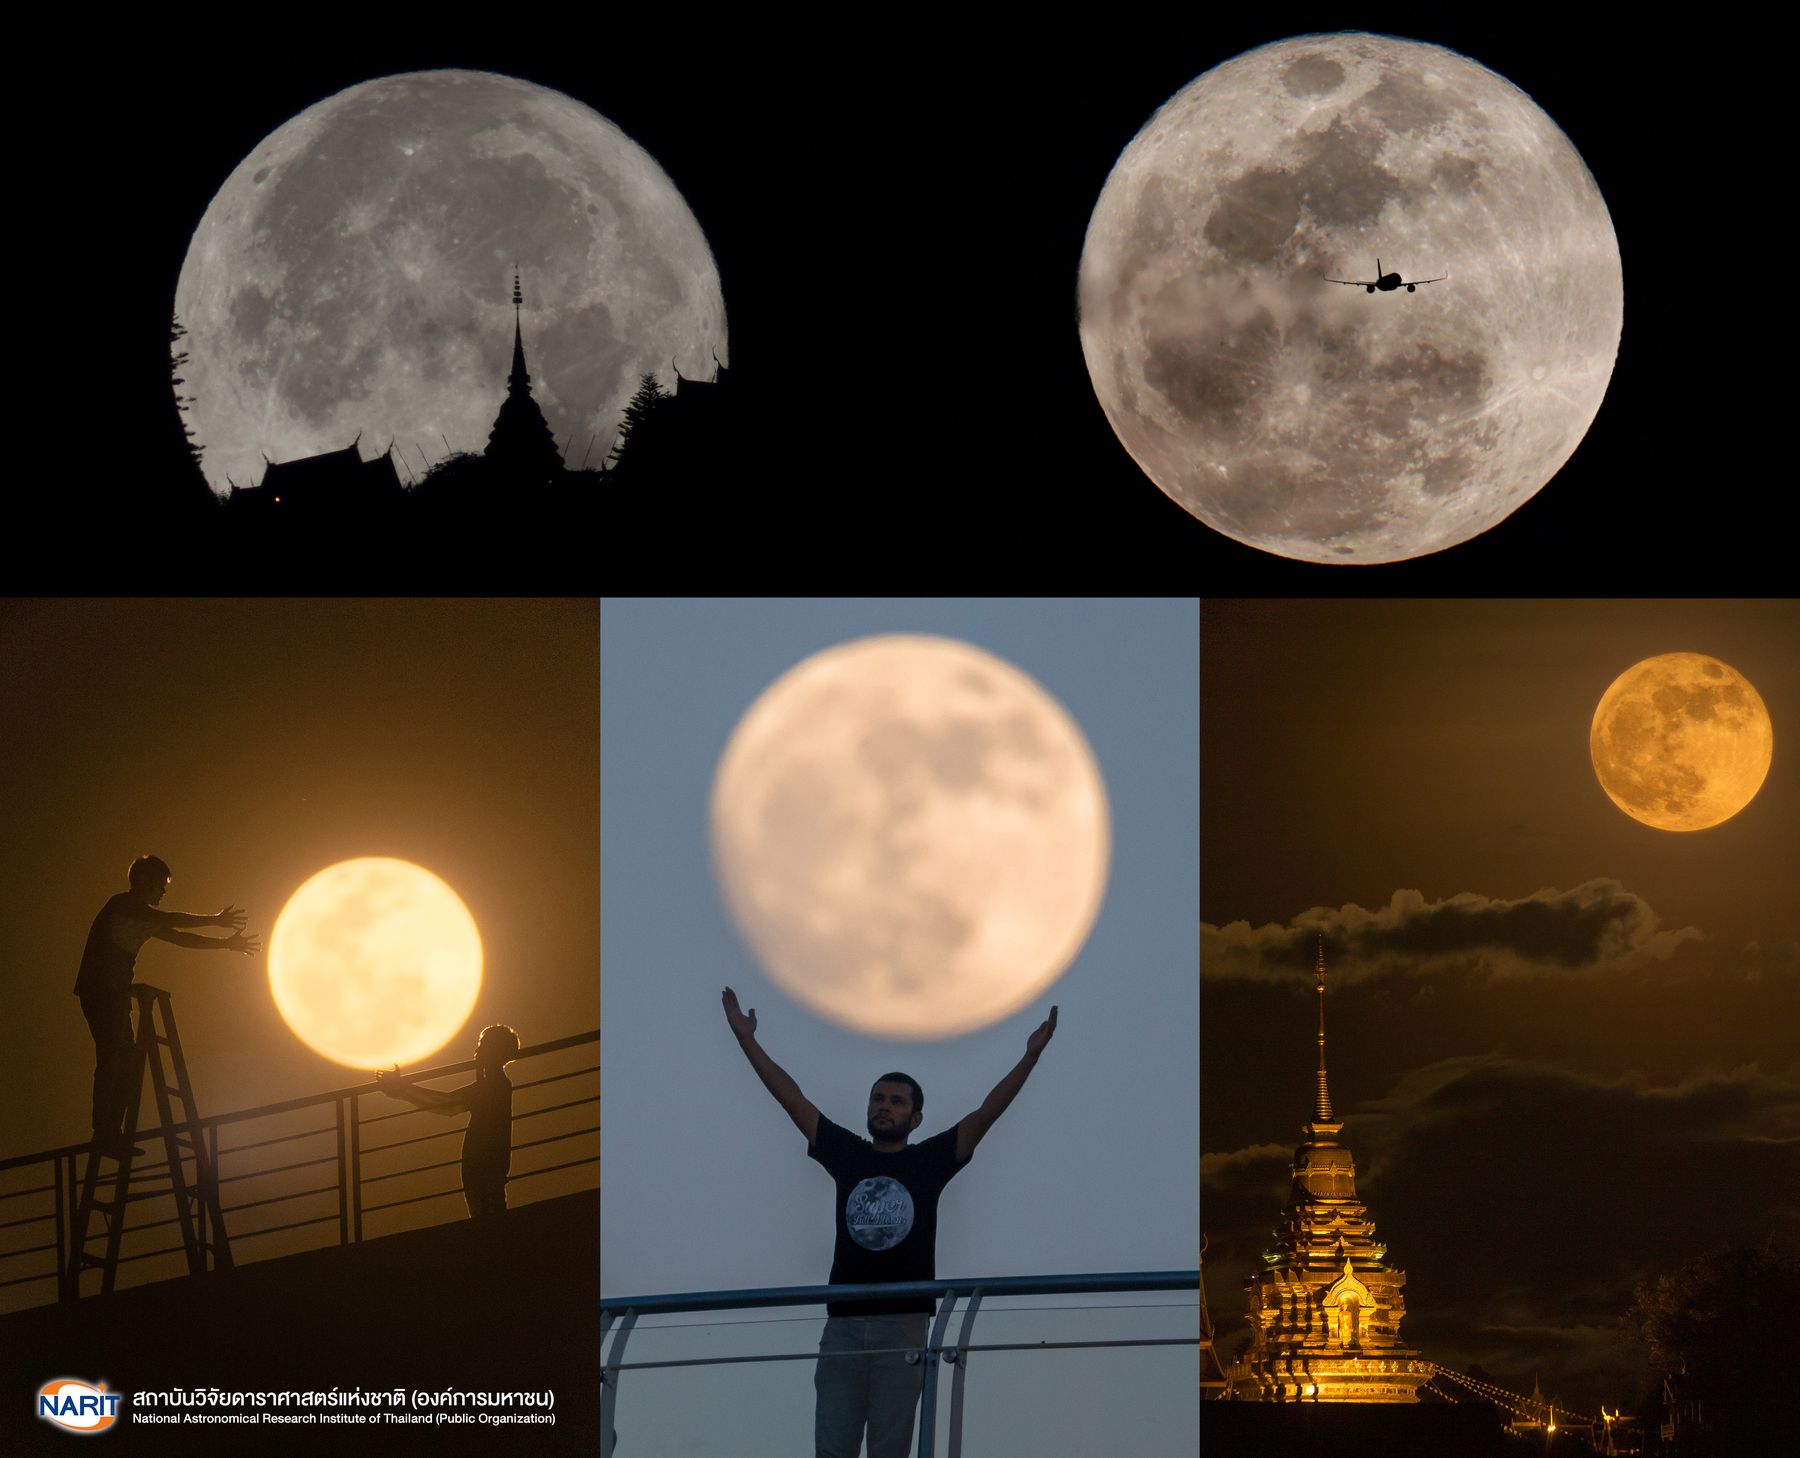 เตรียมพร้อมถ่ายภาพดวงจันทร์เต็มดวงใหญ่ที่สุดในรอบปี 27 เมษายนนี้